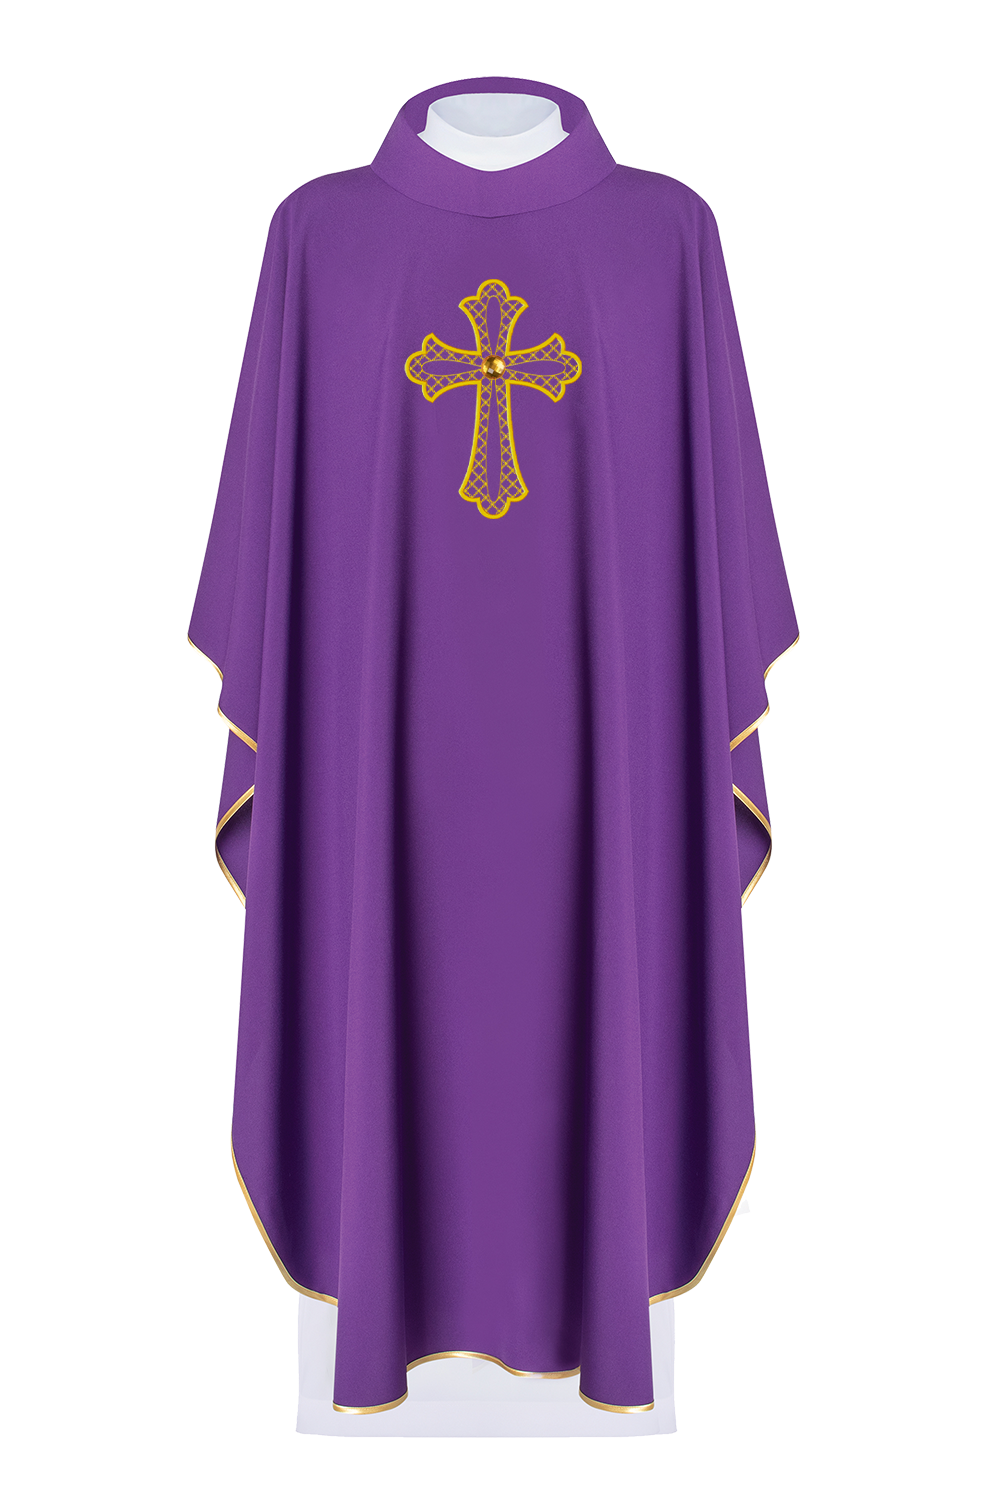 Ornat haftowany z symbolem krzyża Fioletowy